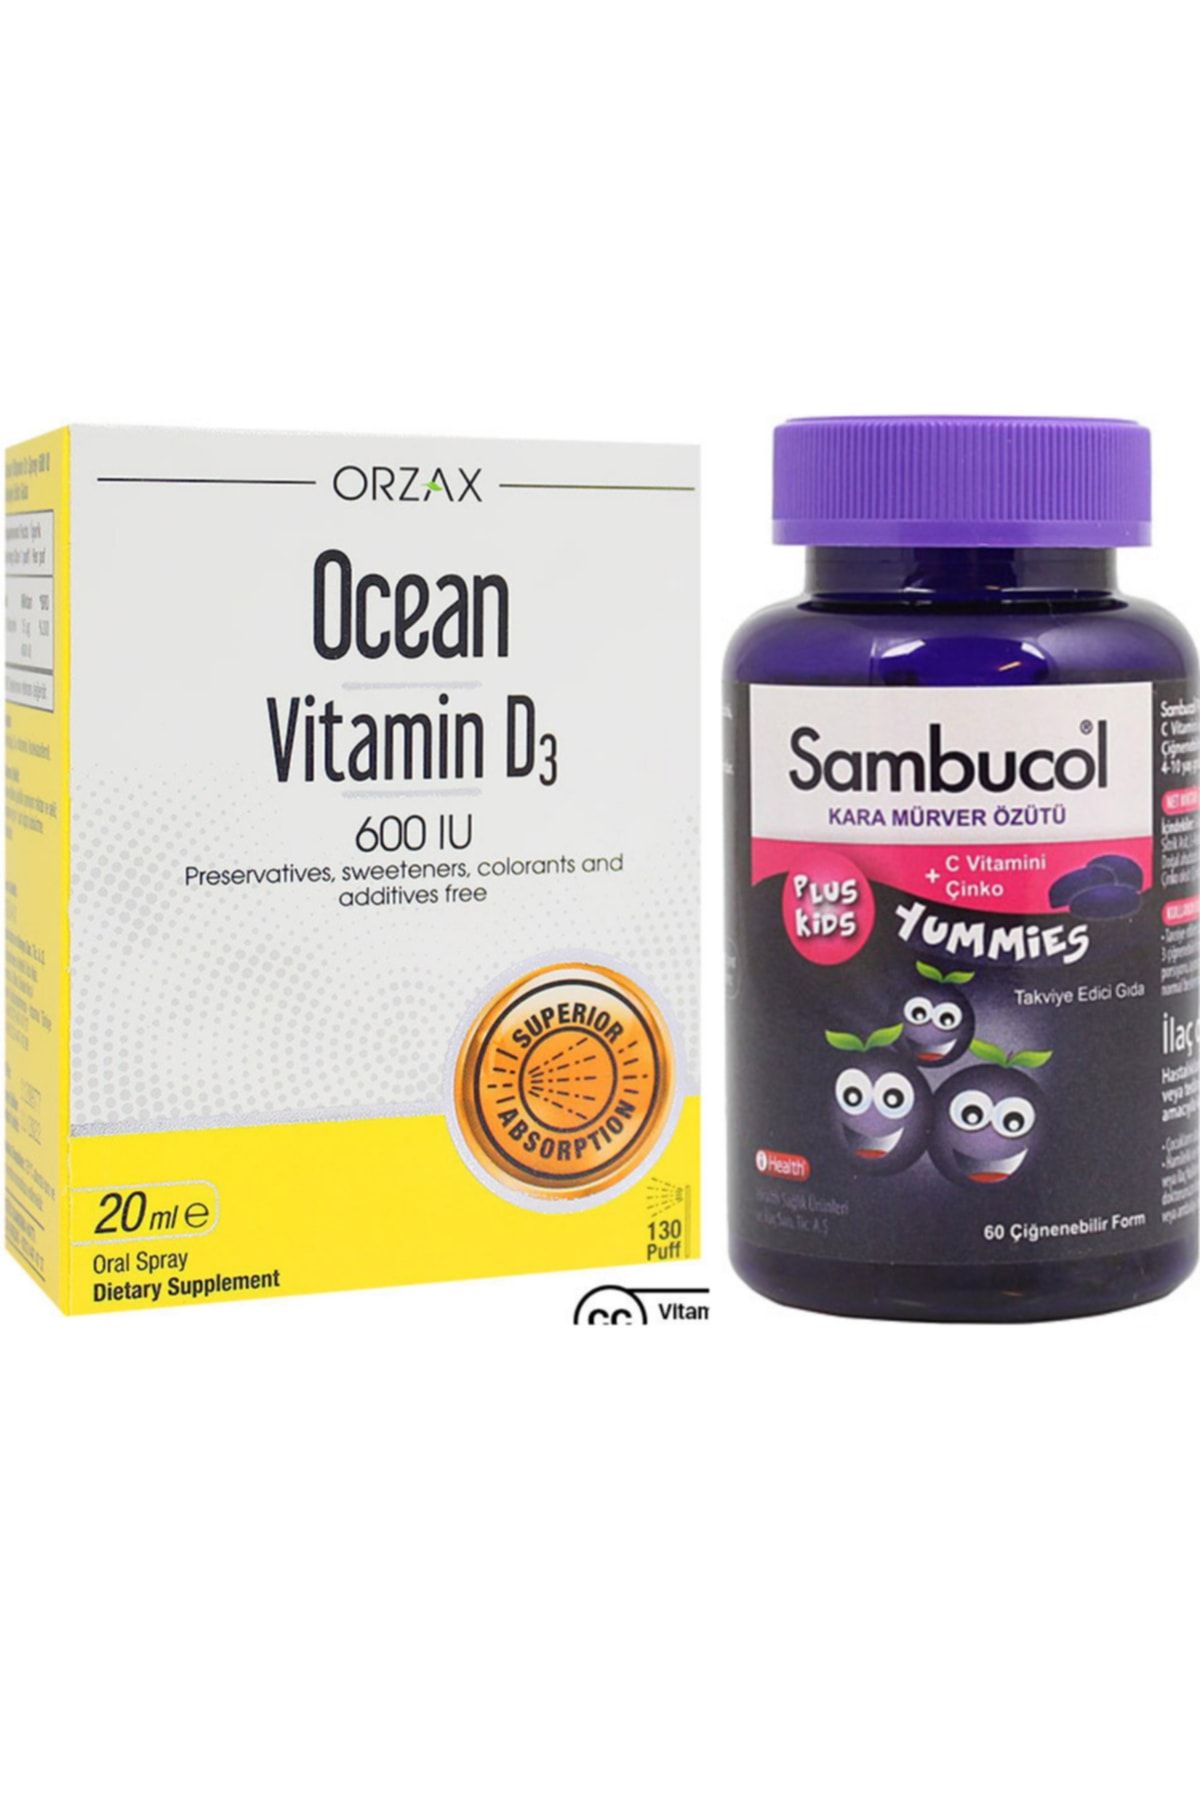 Ocean Vitamin D3 600ıu Sprey 20 ml + Sambucol Plus Kids Yummies 60 Çiğnenebilir Form